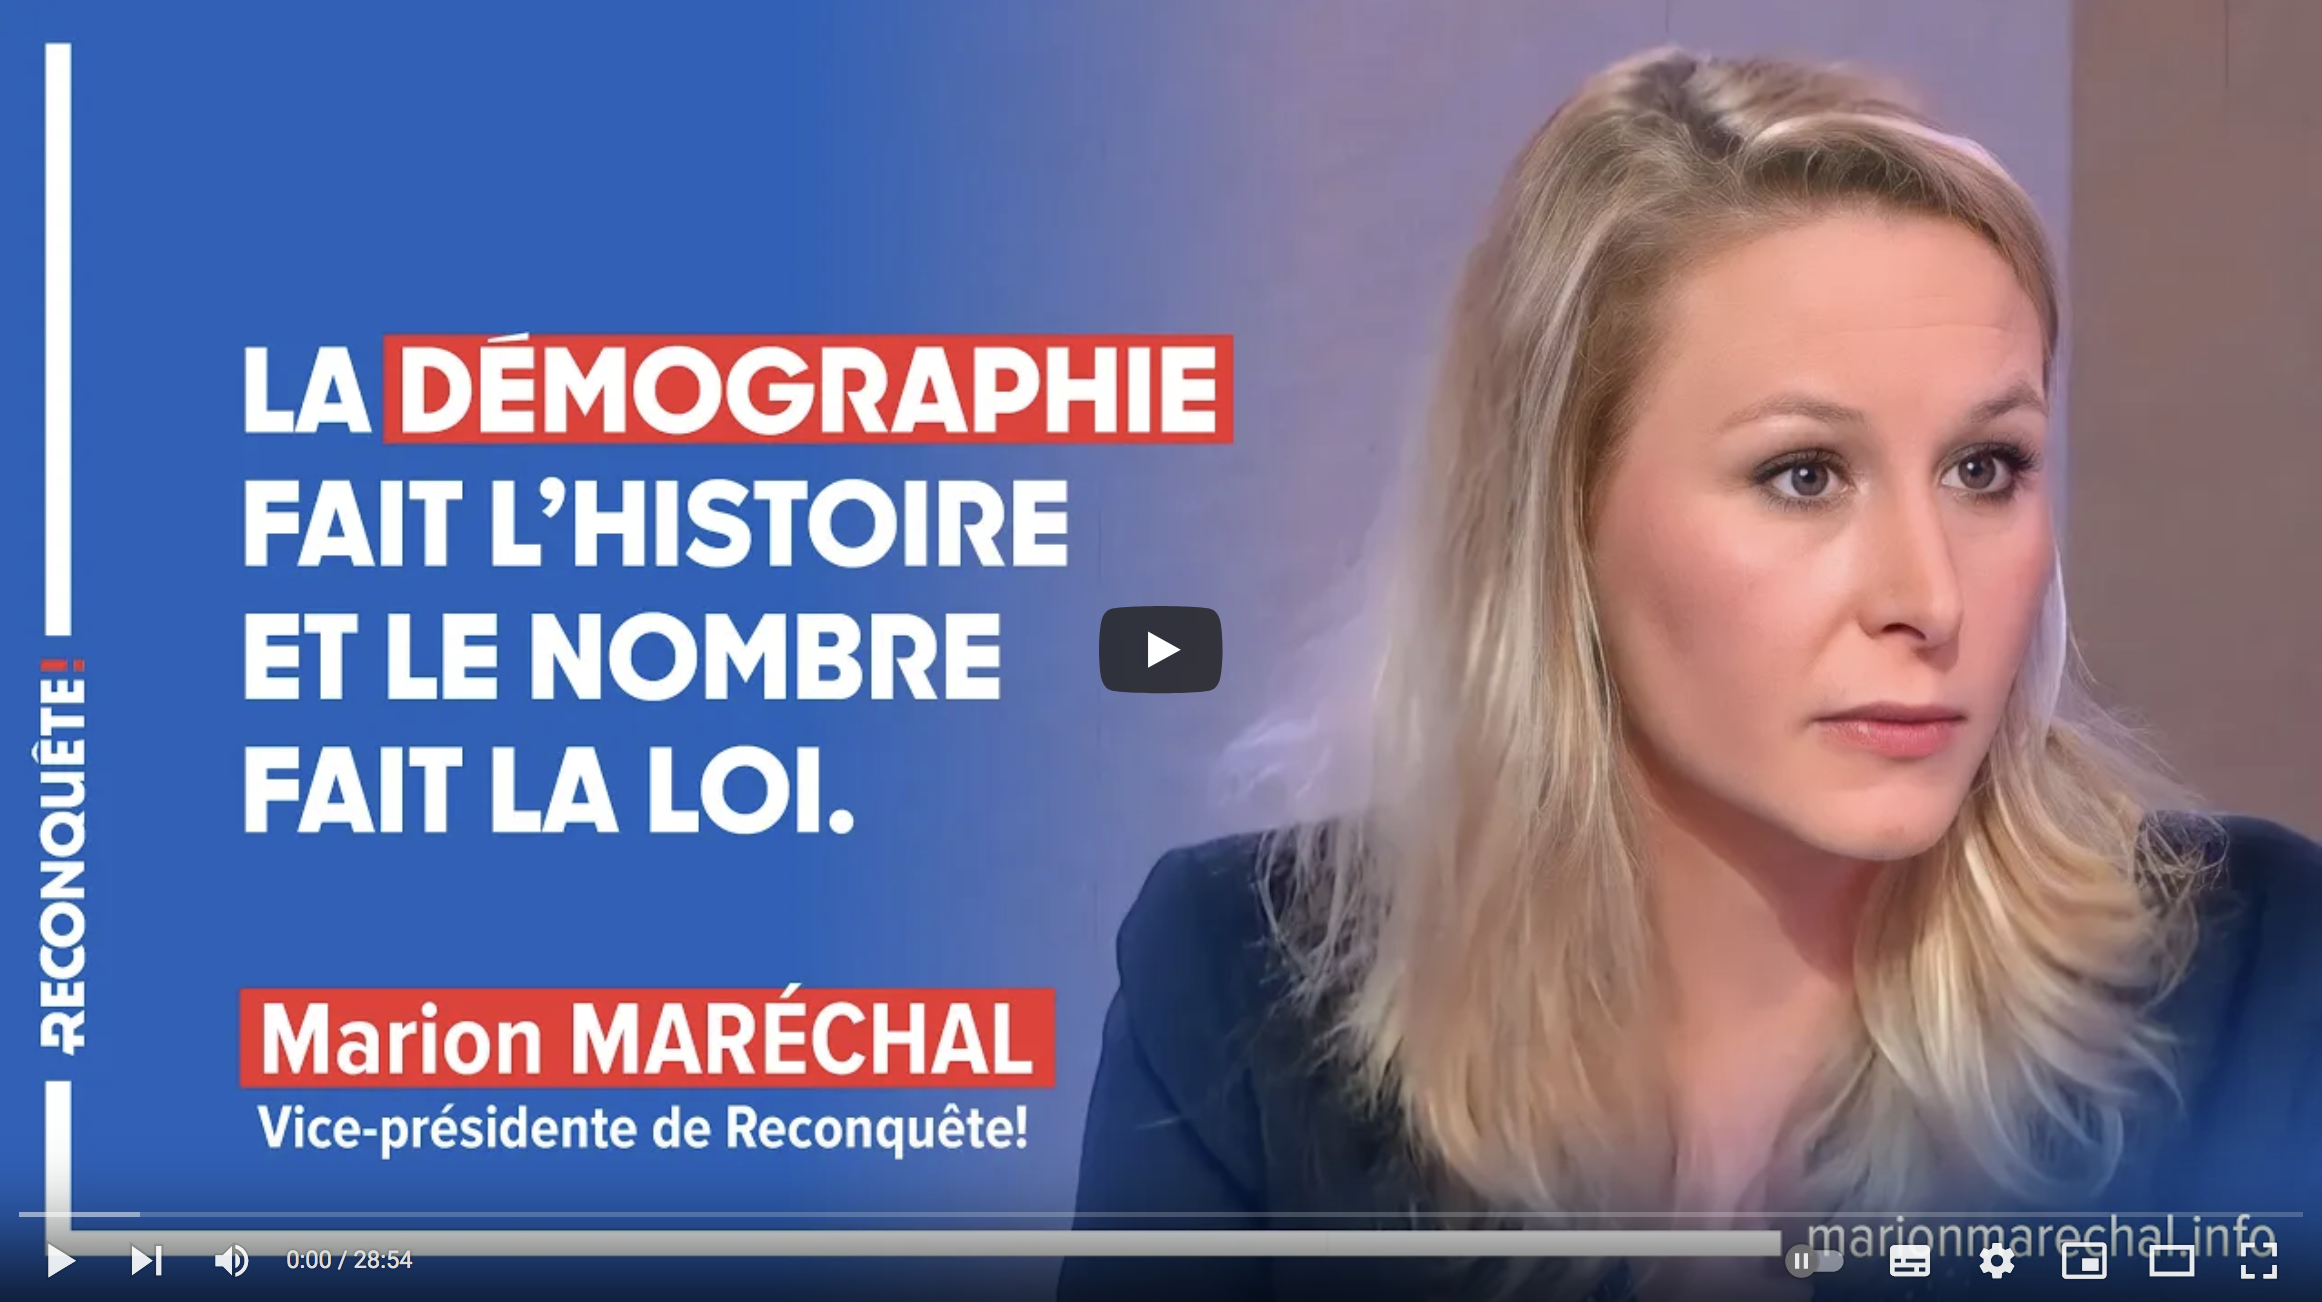 Marion Maréchal : “La démographie fait l’Histoire et le nombre fait la loi” (VIDÉO)